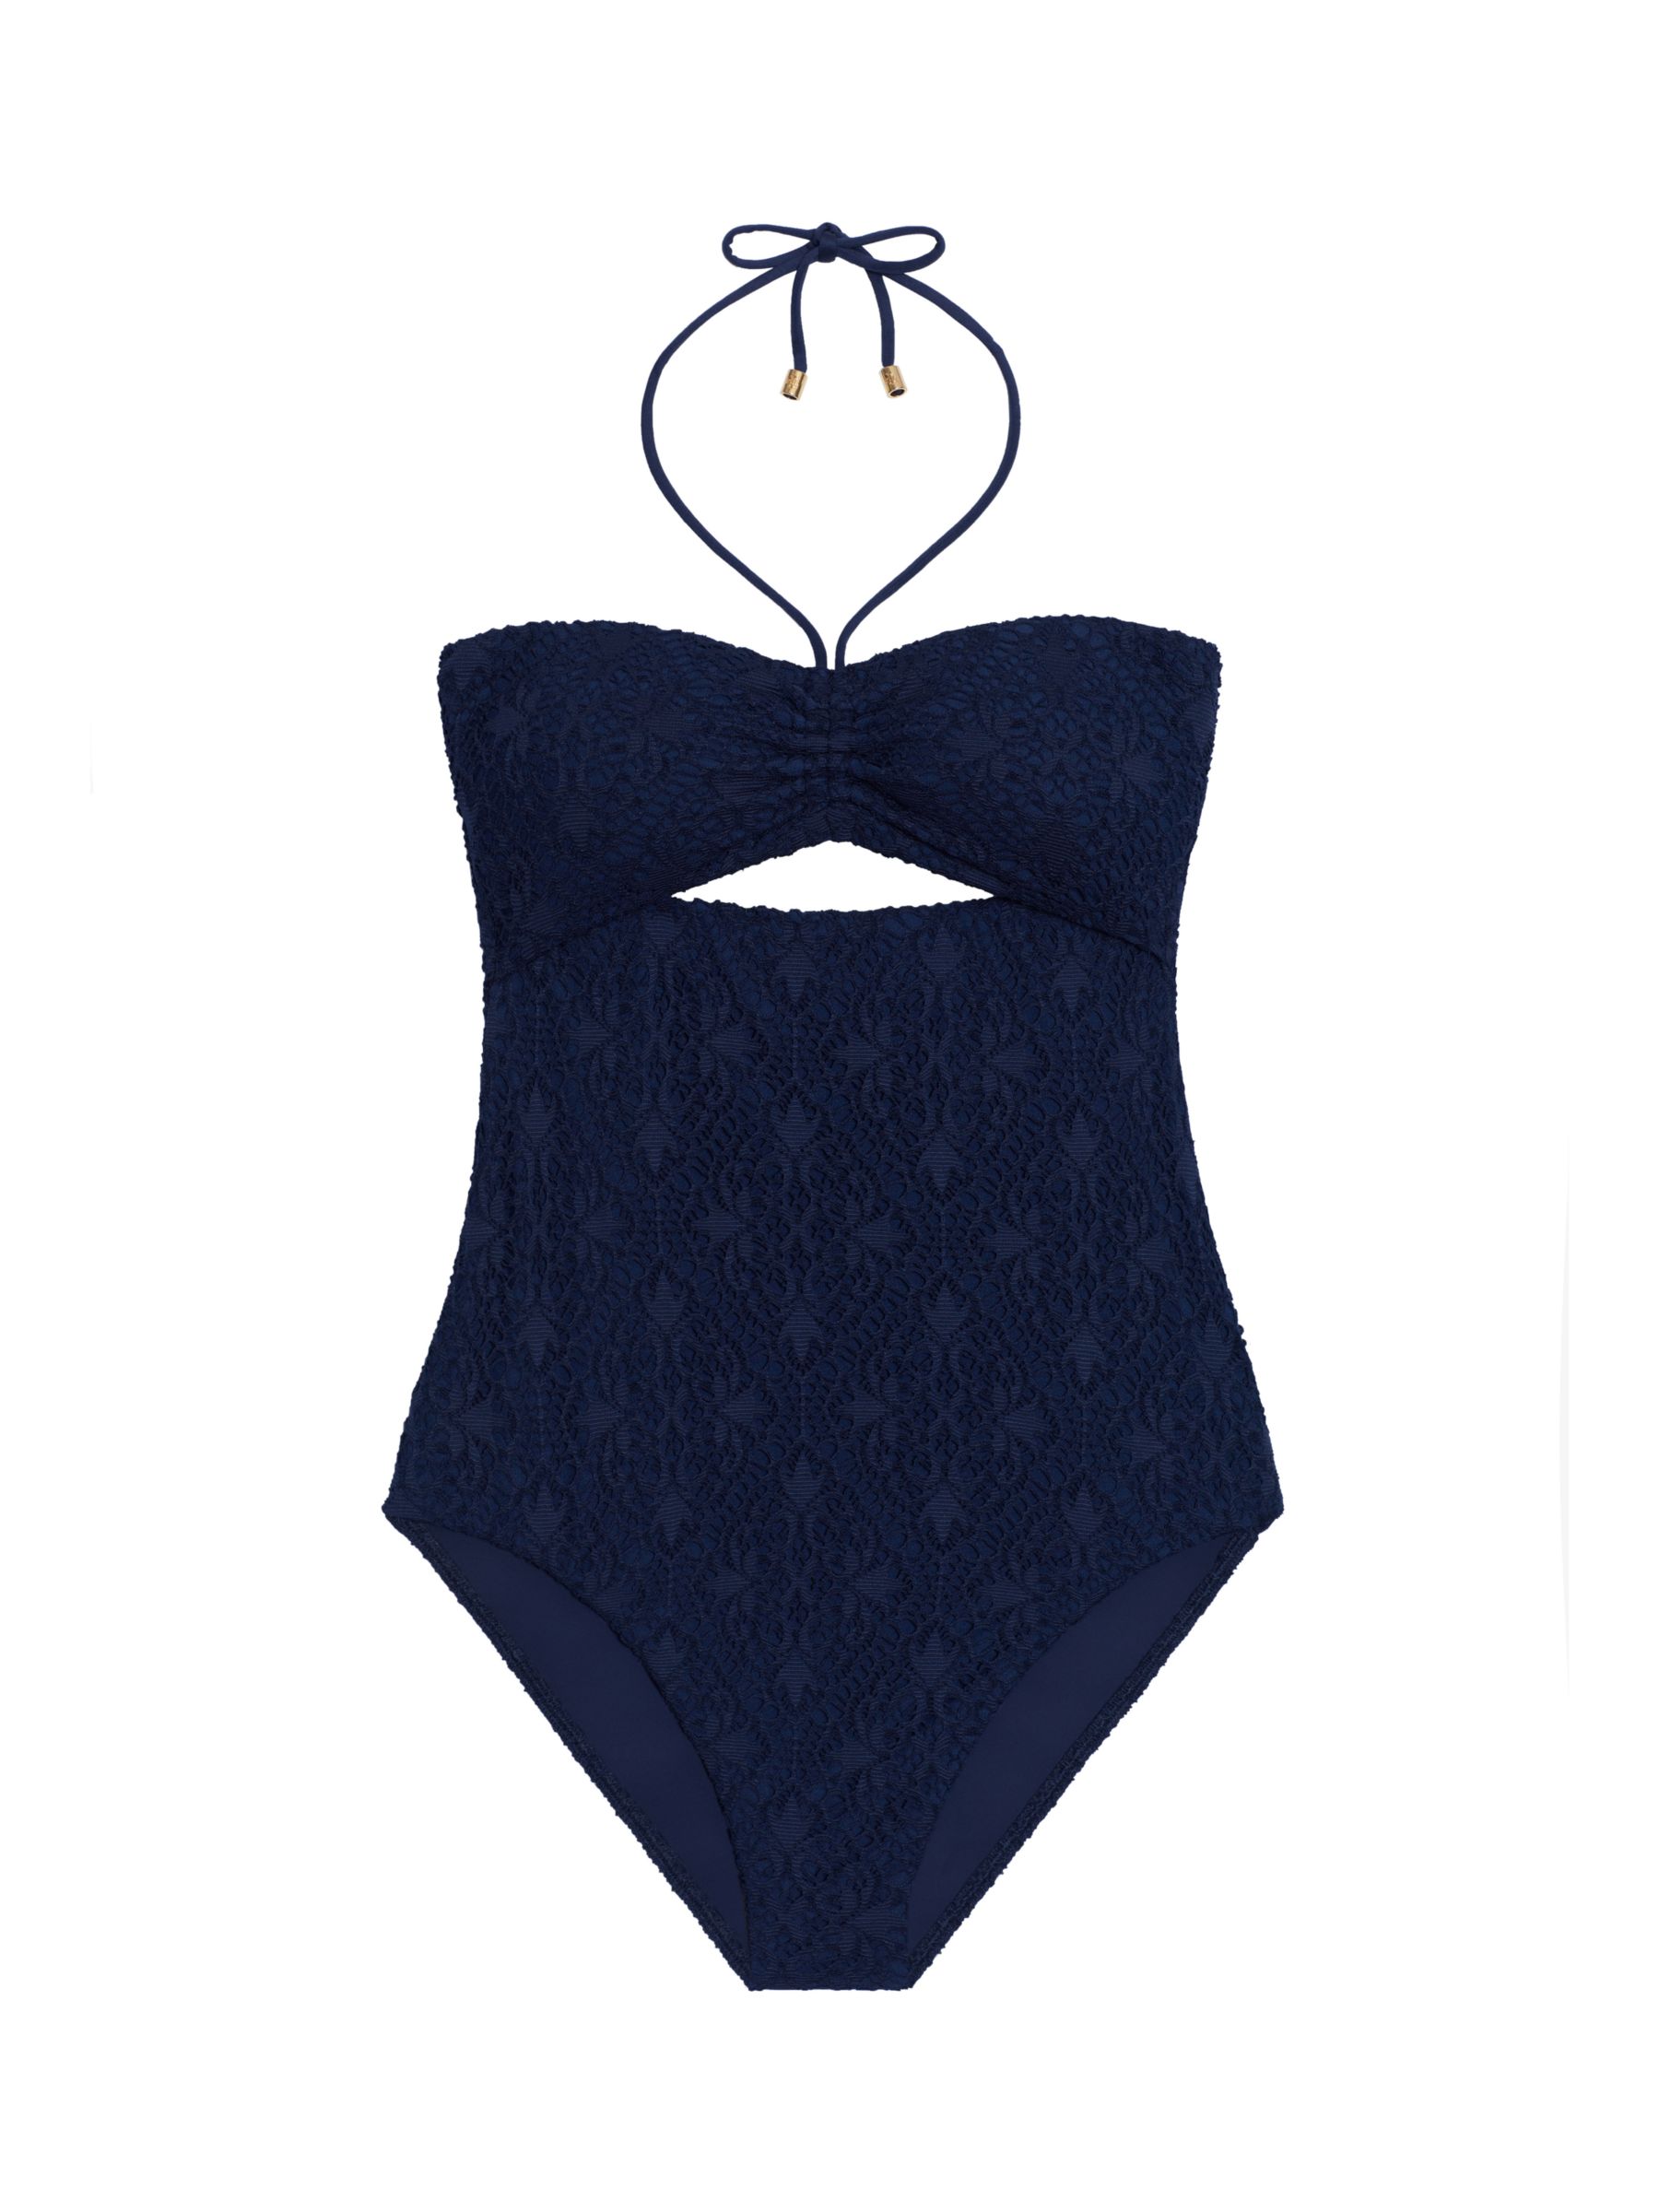 Lauren Ralph Lauren Crochet Bandeau Swimsuit, Dark Navy, 8